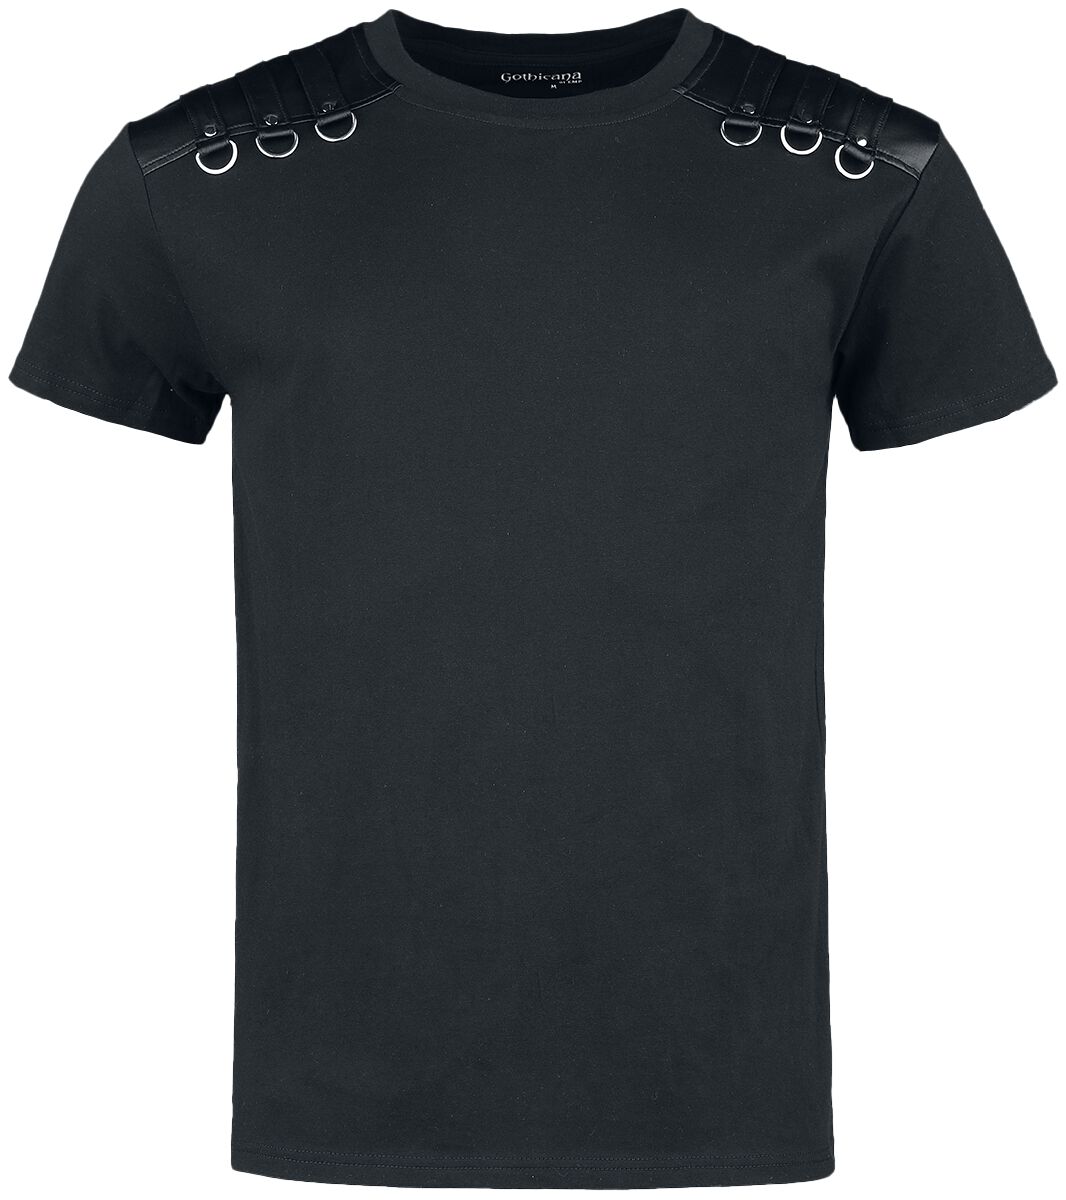 Gothicana by EMP - Gothic T-Shirt - T-Shirt mit Riemen auf den Schultern - XL bis XXL - für Männer - Größe XXL - schwarz